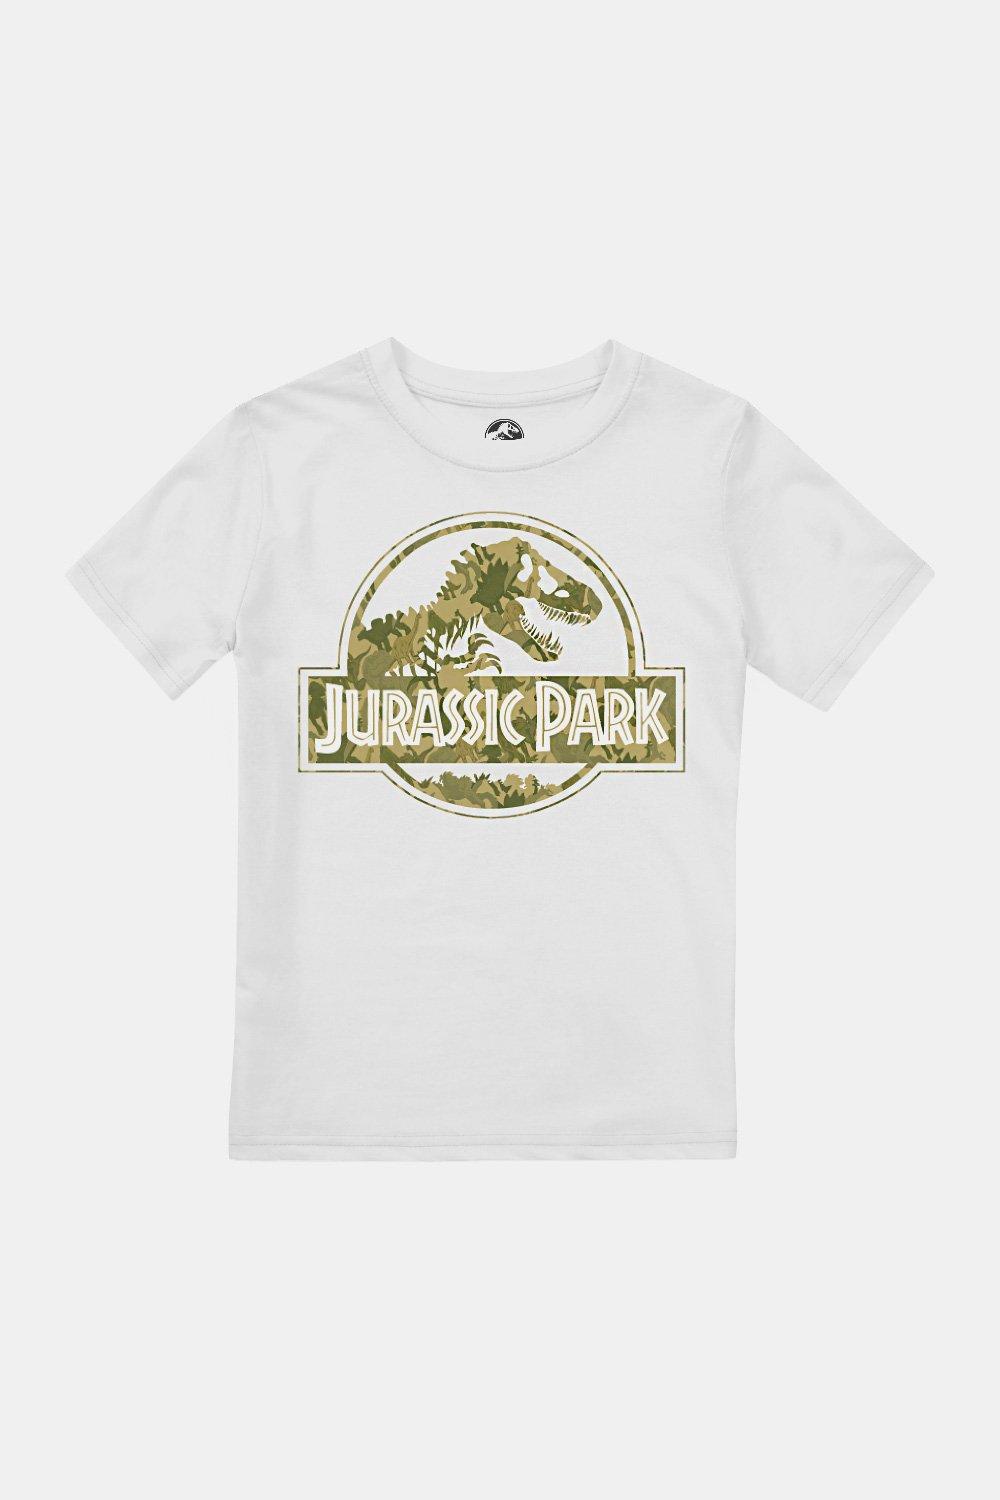 опыты занимательная биология питомец из юрского периода Футболка с камуфляжным принтом «Дино» для мальчиков Jurassic Park, белый